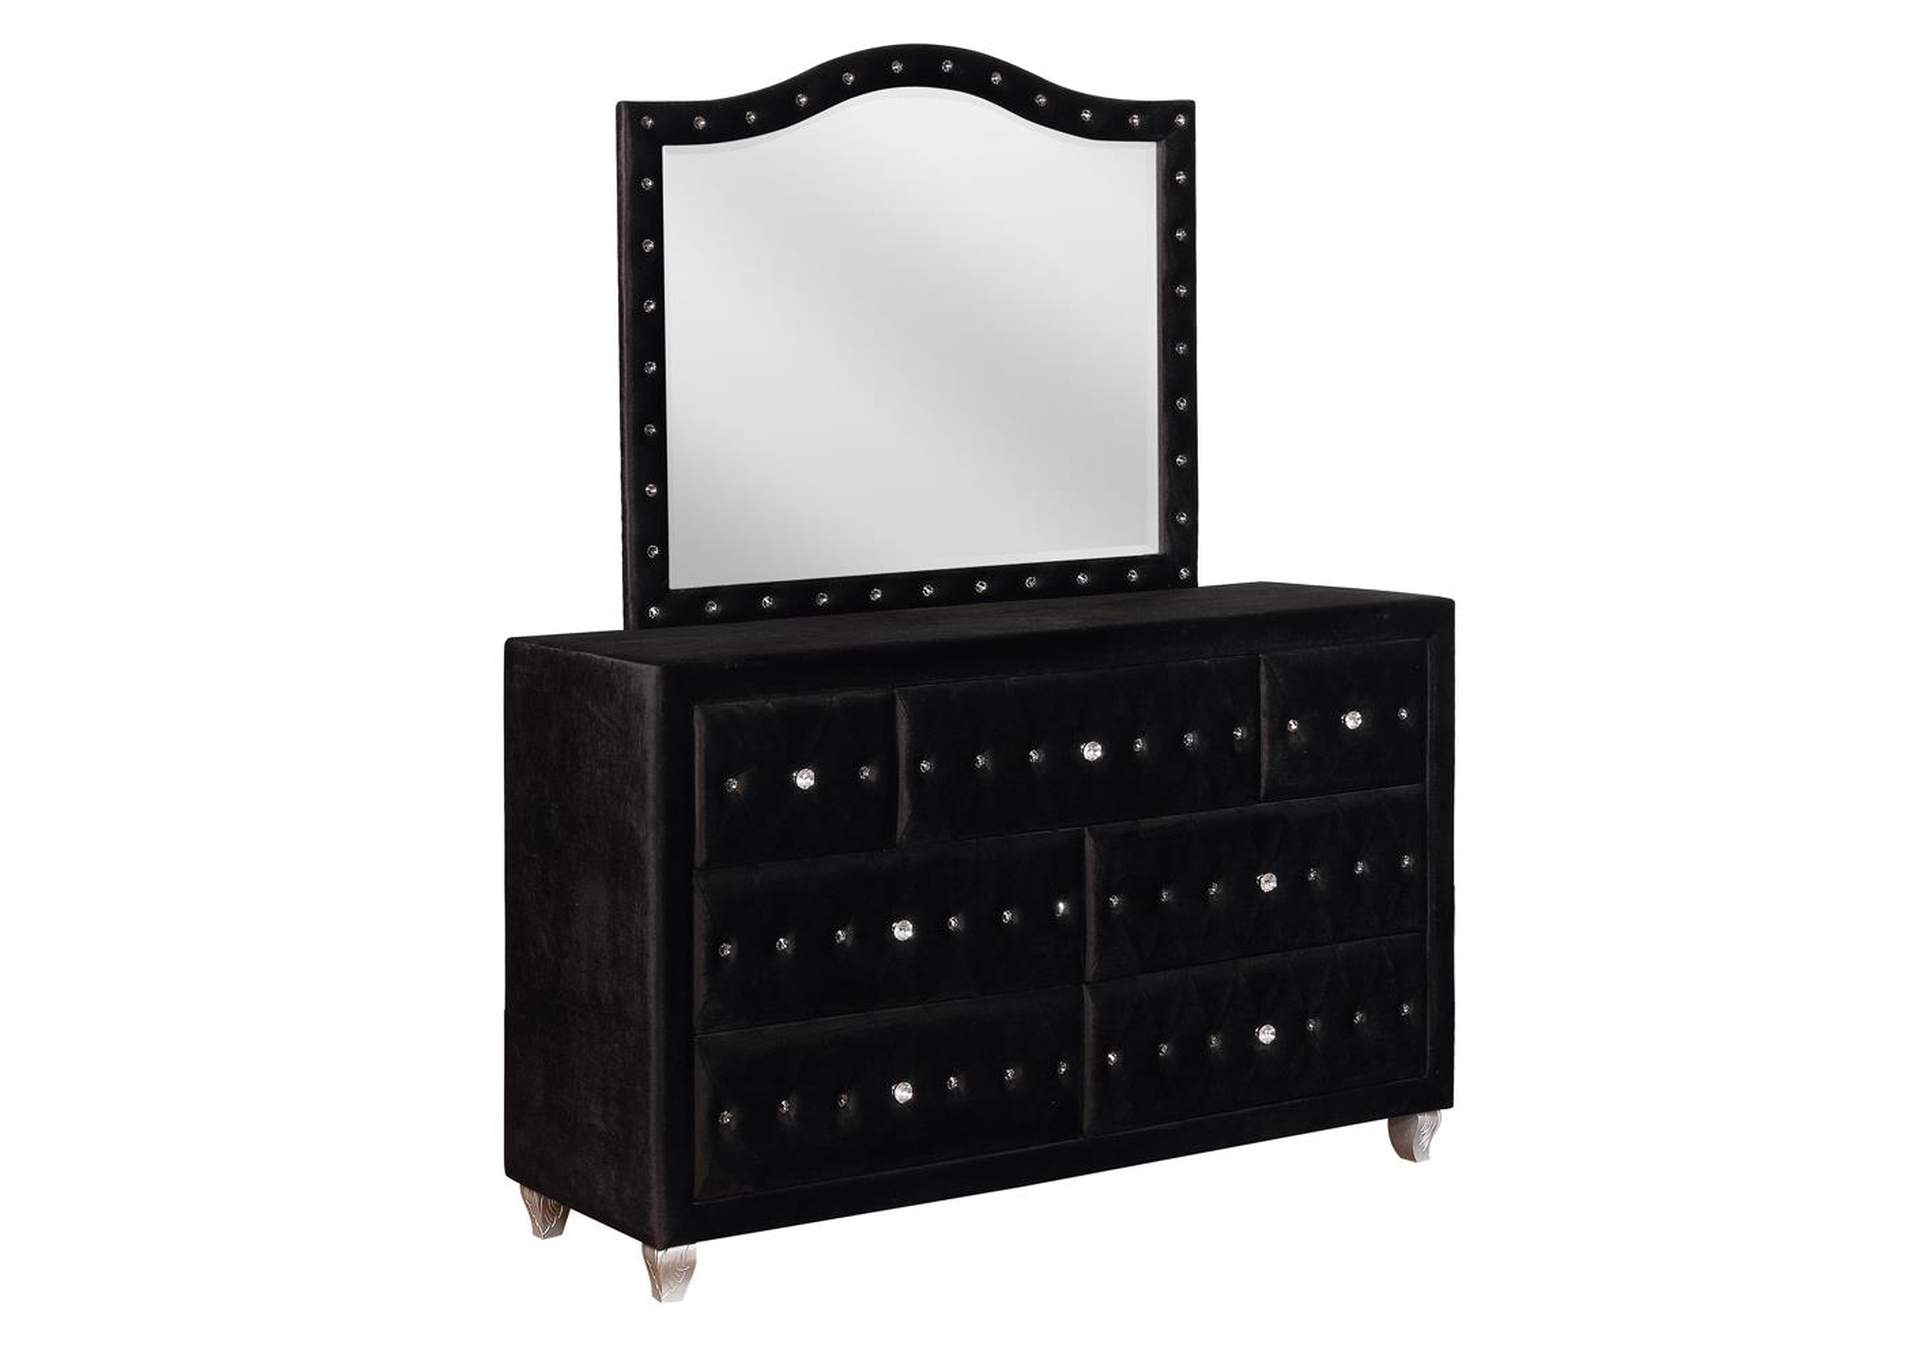 Deanna Metallic Black Dresser and Mirror,Coaster Furniture